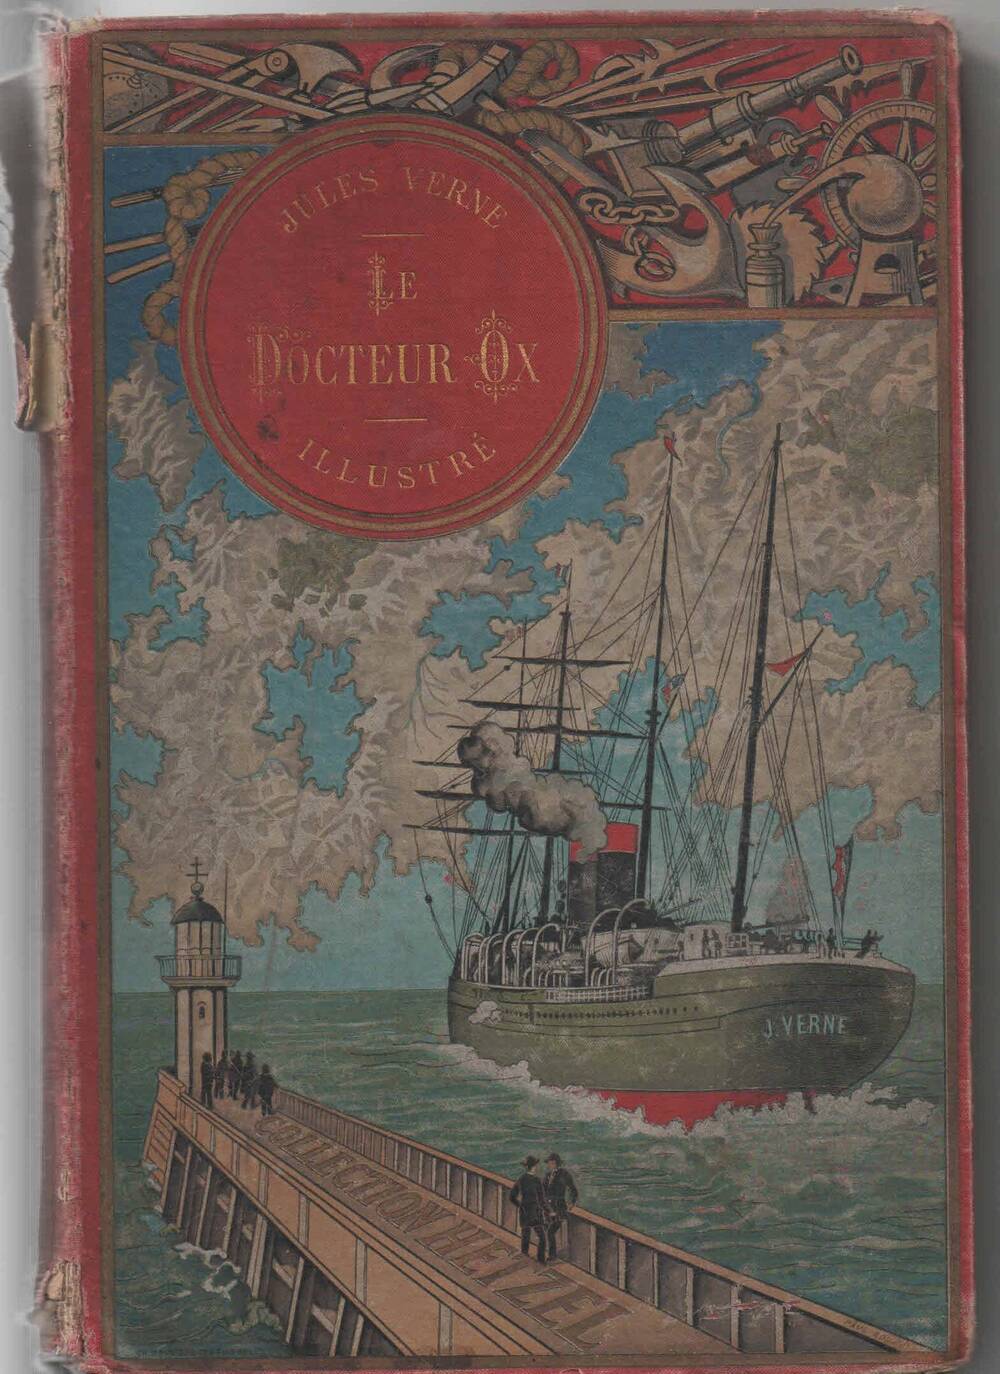 Книга: Верн Ж. Доктор Окс. - Париж, 1864. - 211 с.